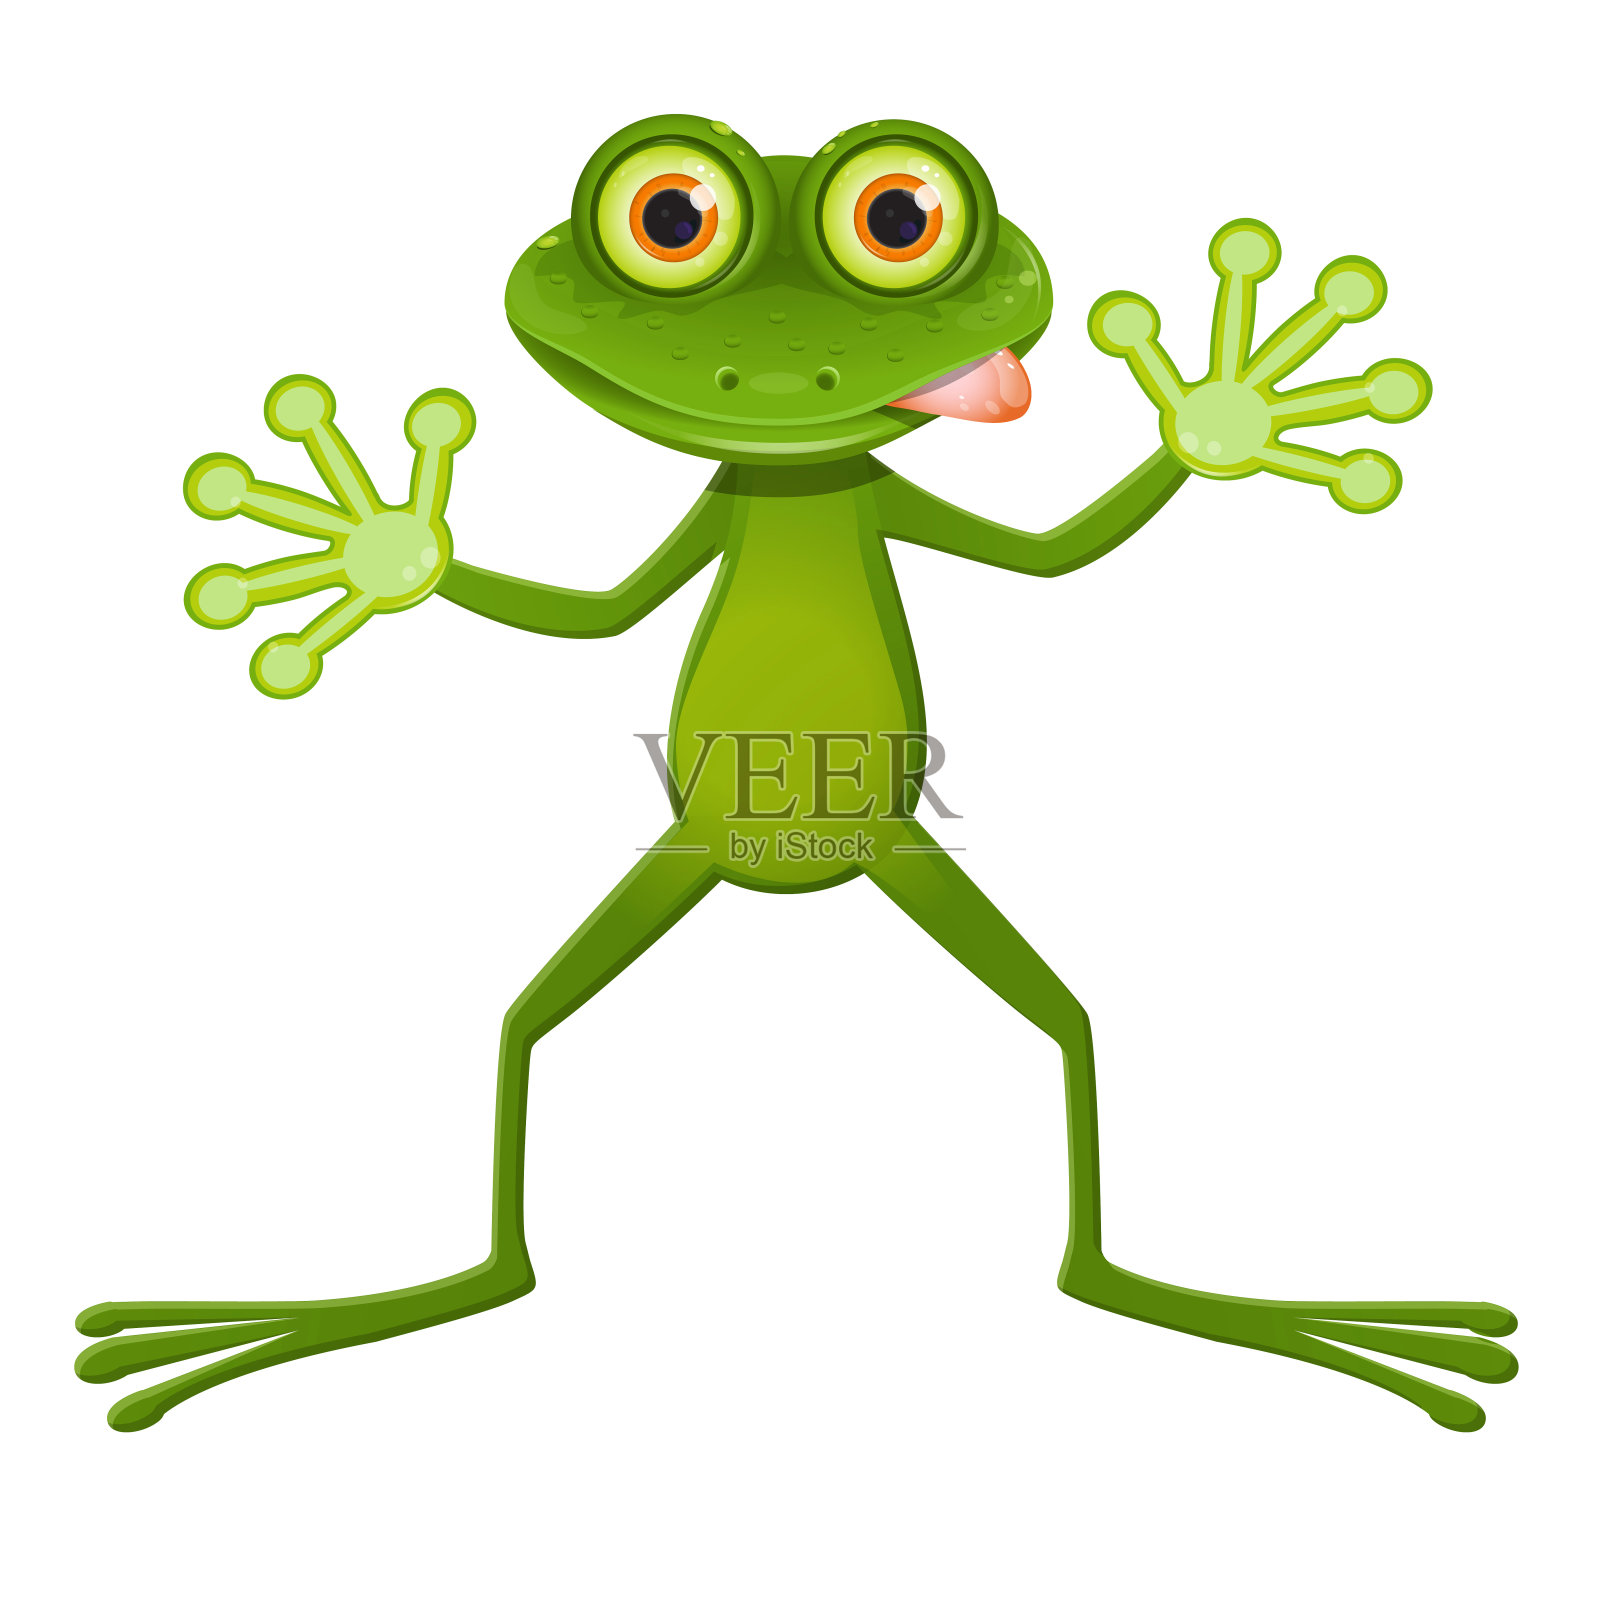 突眼的青蛙插画图片素材